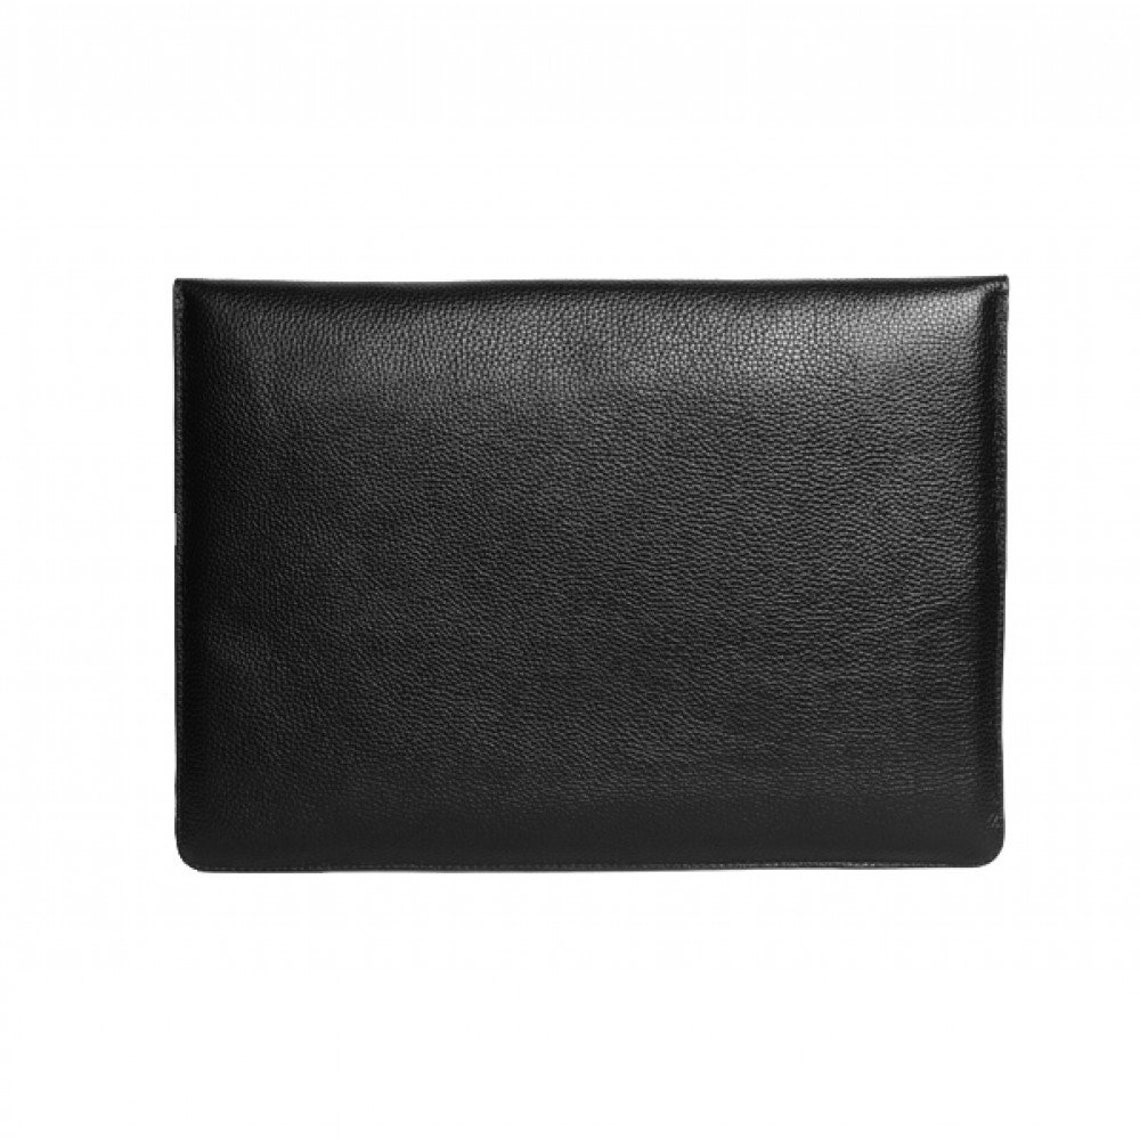 Black leather MacBook case Unisex Leather sleeve Laptop | Etsy